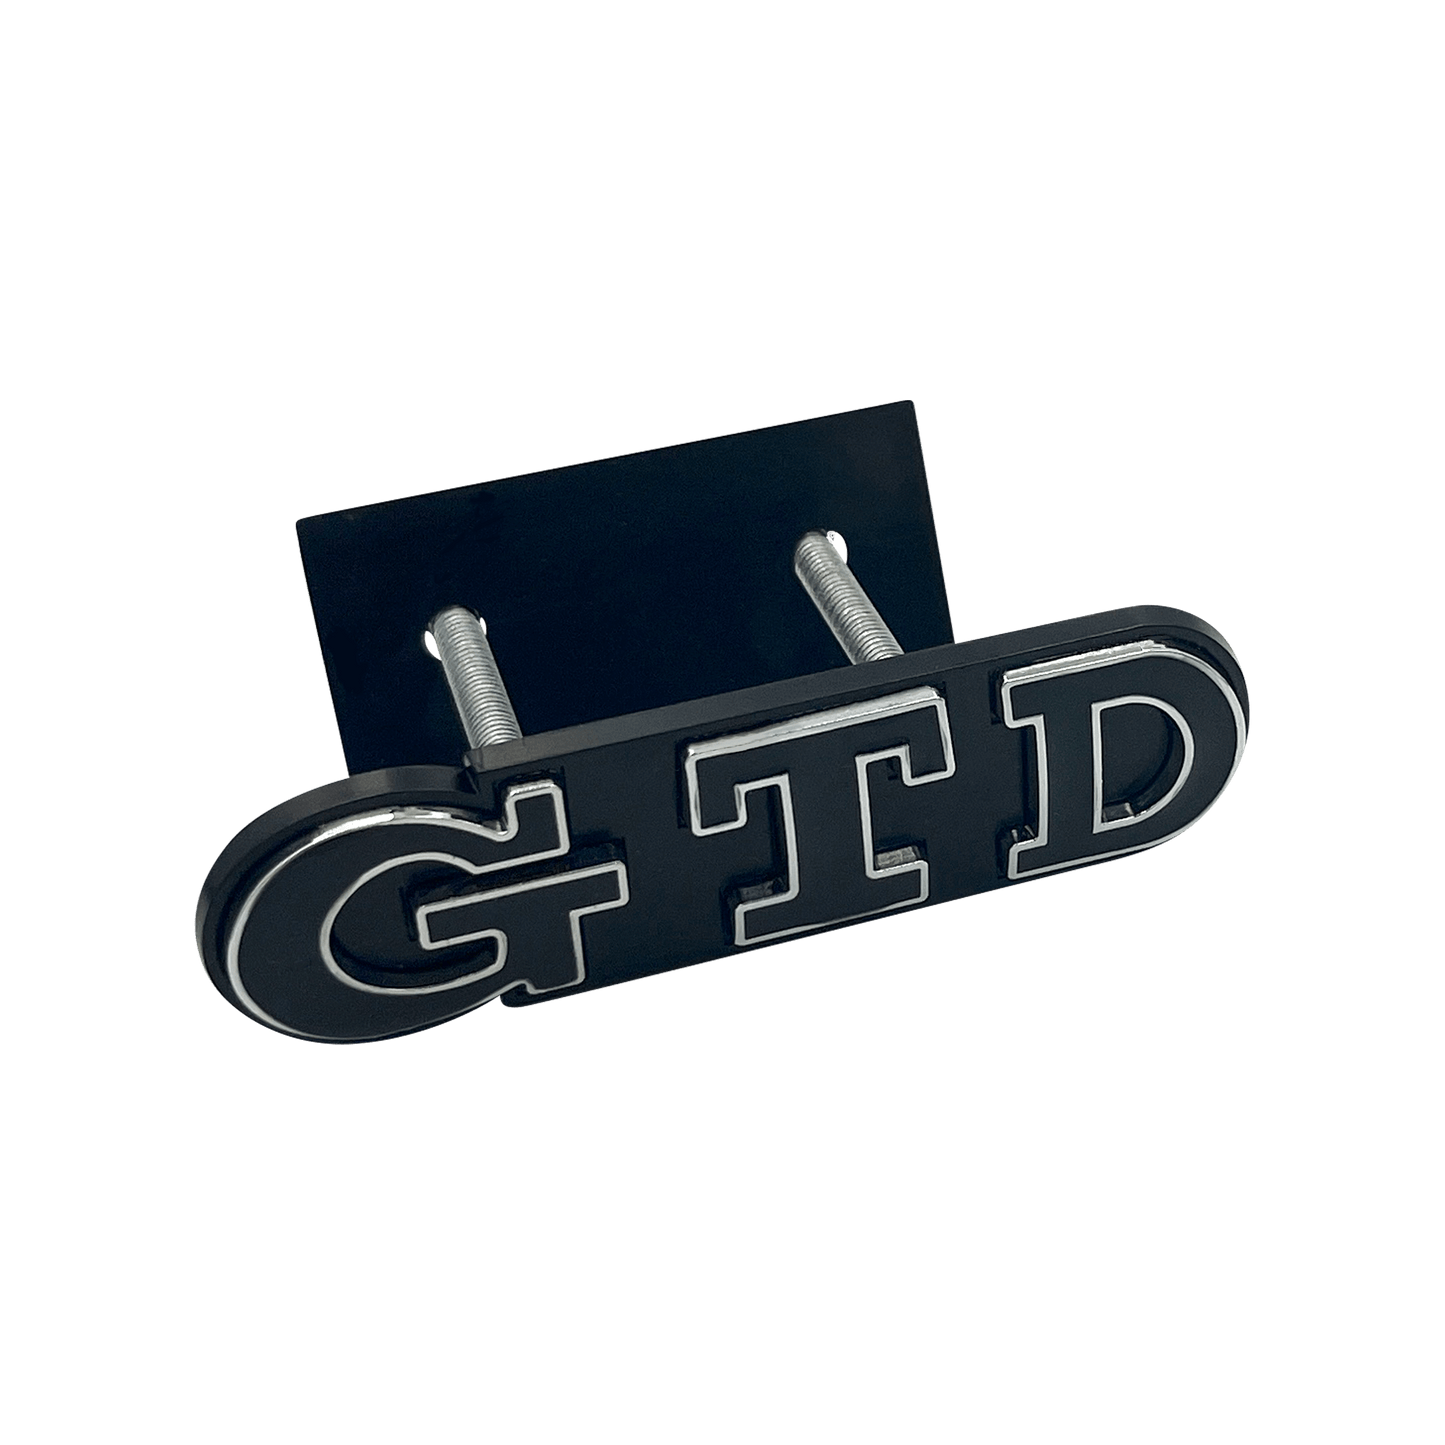 Black VW GTD Front Emblem